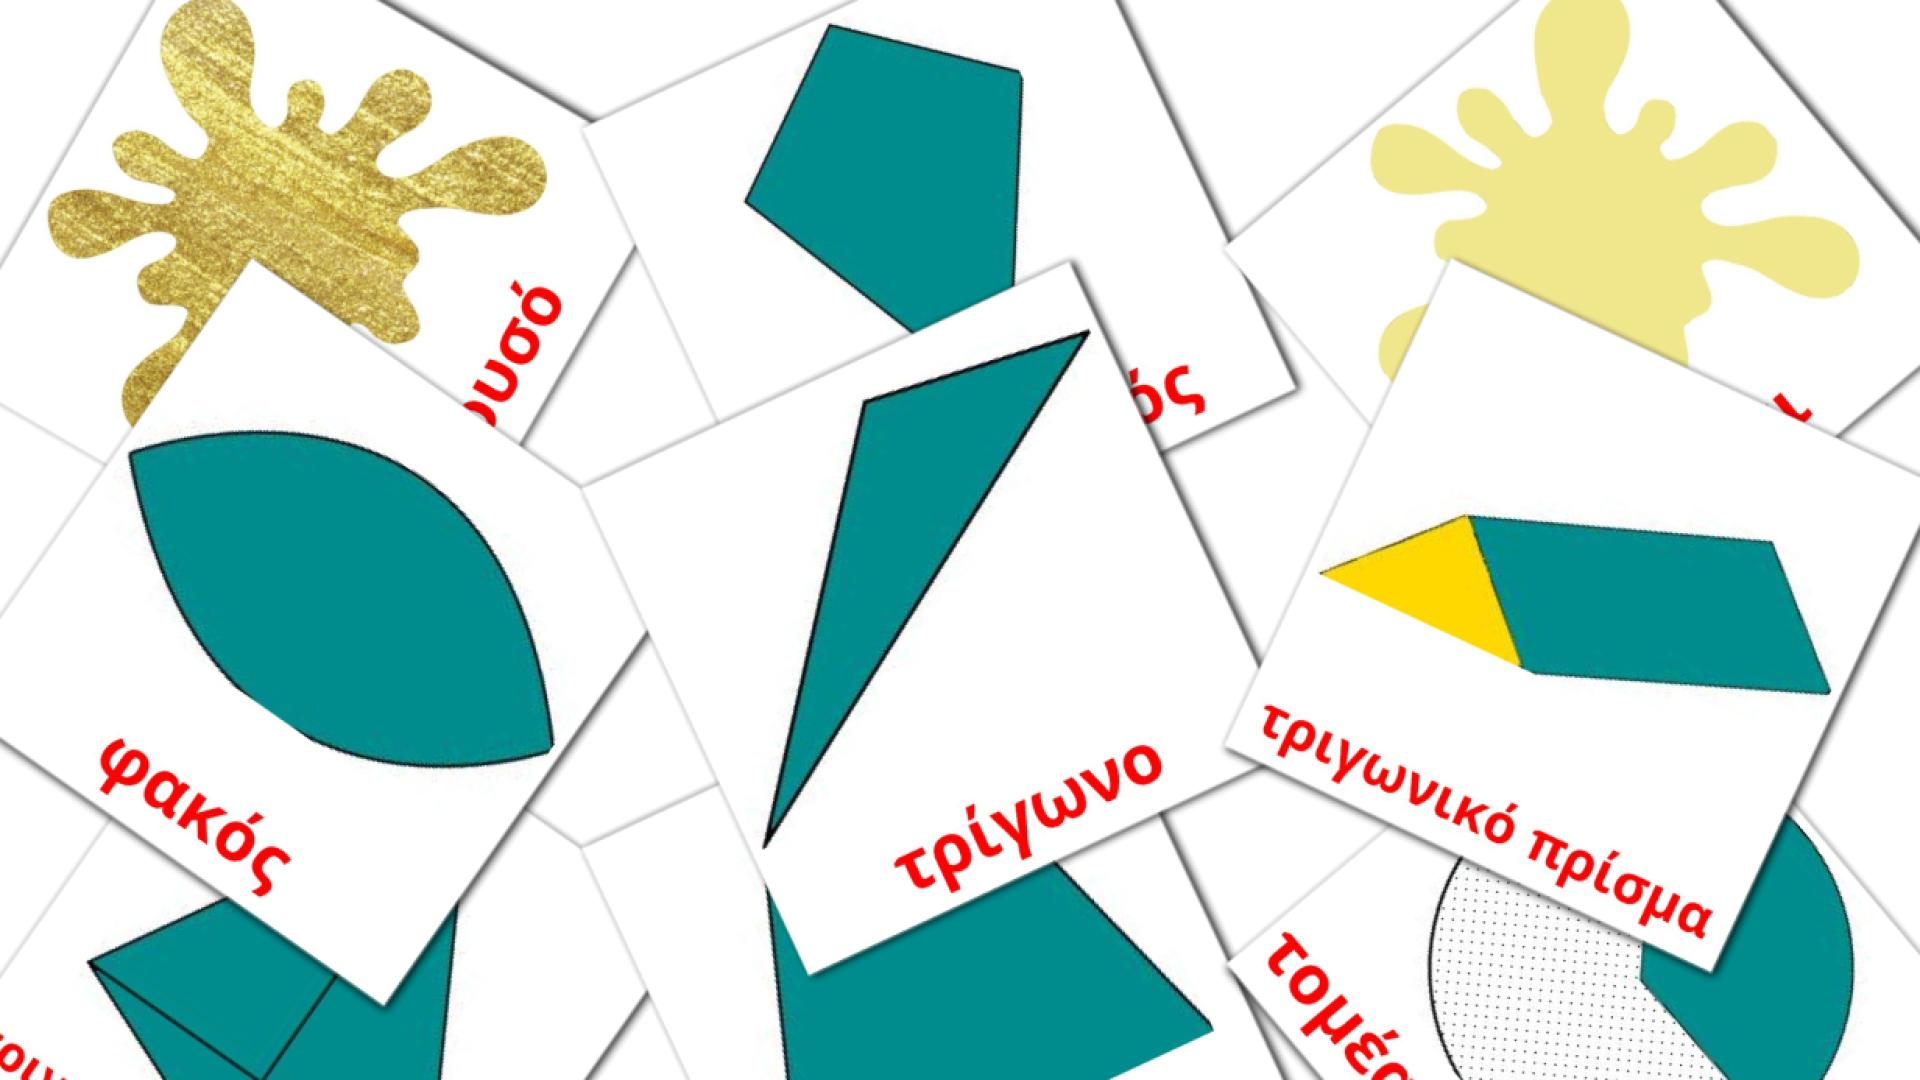 Χρώματα και σχήματα grieks woordenschat flashcards